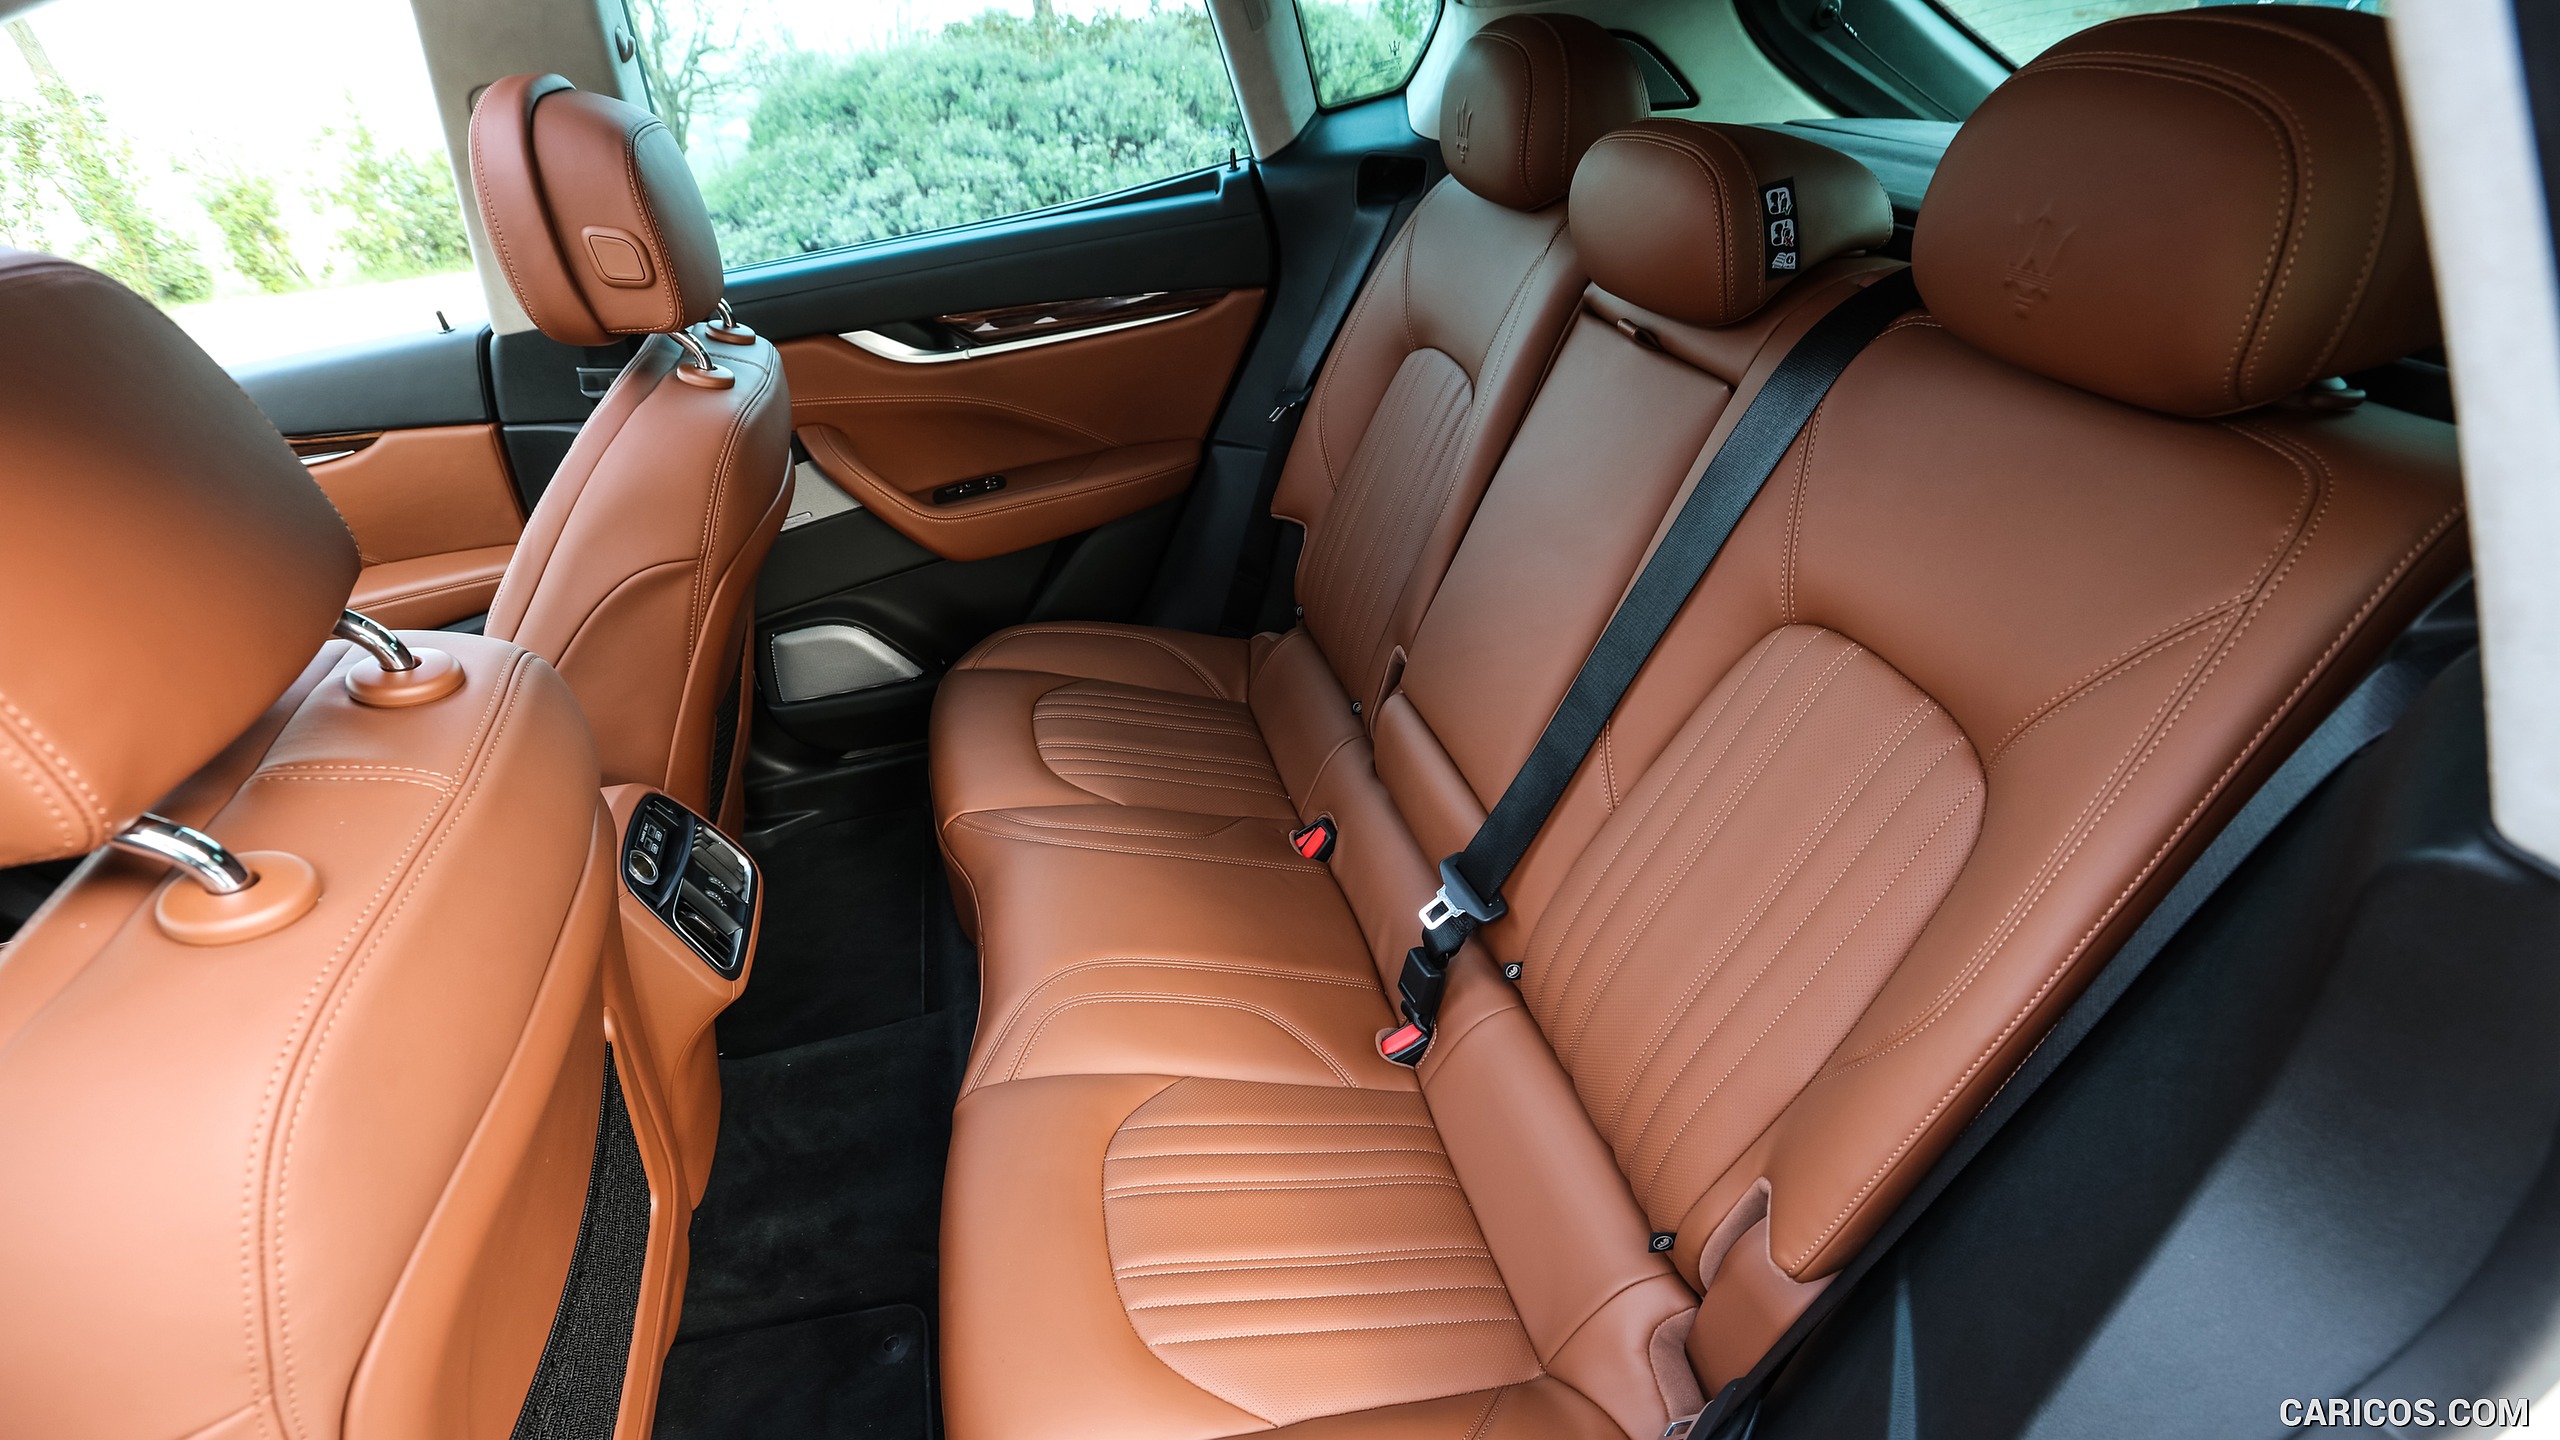 2017 Maserati Levante SUV - Interior, Rear Seats, #106 of 119